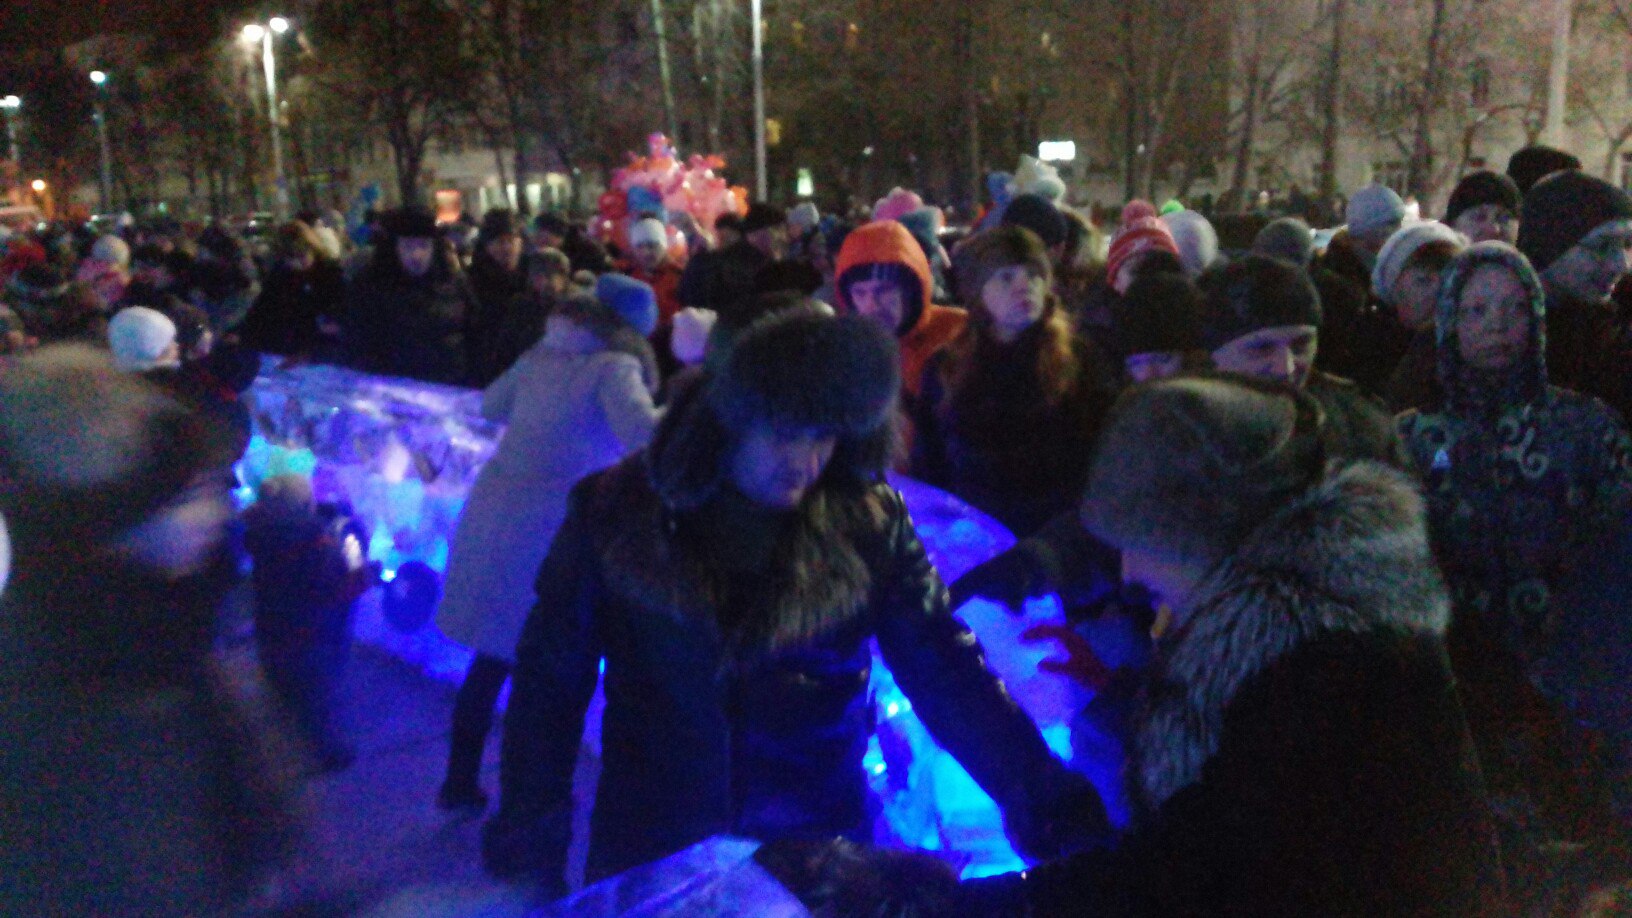 Екатеринбуржцы жалуются на жуткую давку вокруг ледового городка: «К елке не попасть, люди толкаются, кричат, лезут через ограждения» - Фото 3